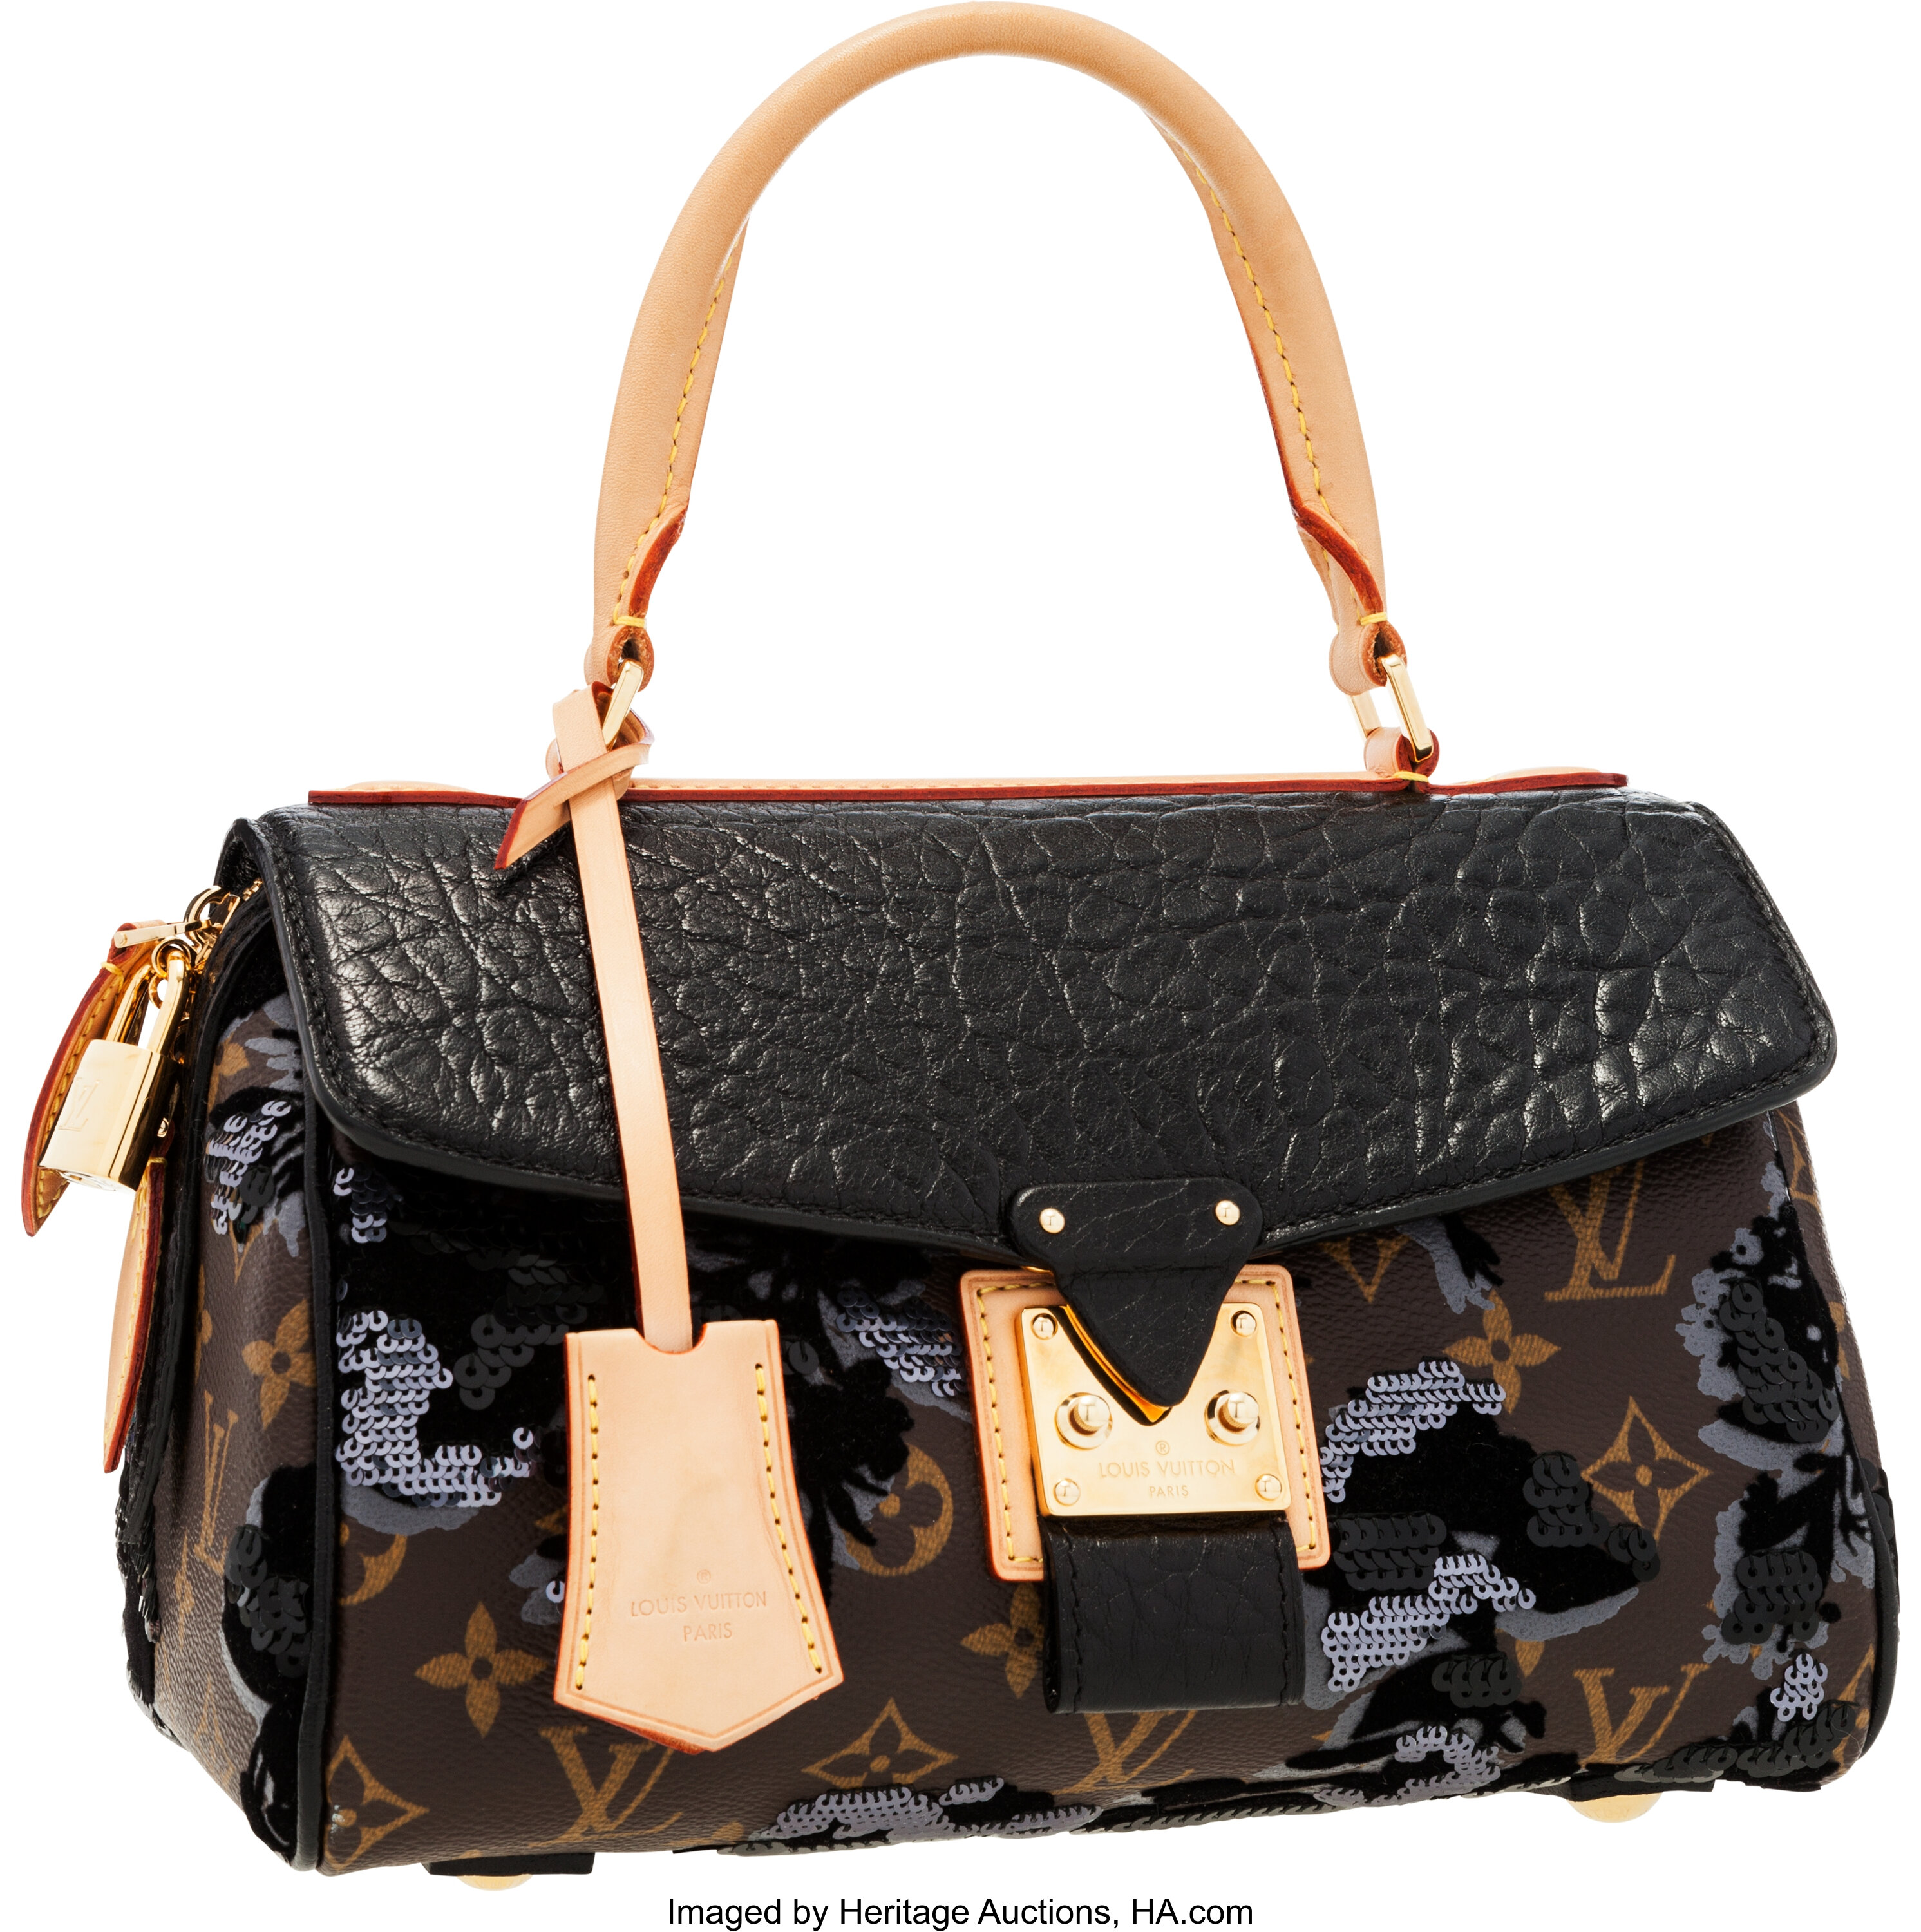 Louis Vuitton Vintage - Fleur de Jais Carrousel Bag - Black Brown -  Monogram Canvas and Leather Handbag - Luxury High Quality - Avvenice